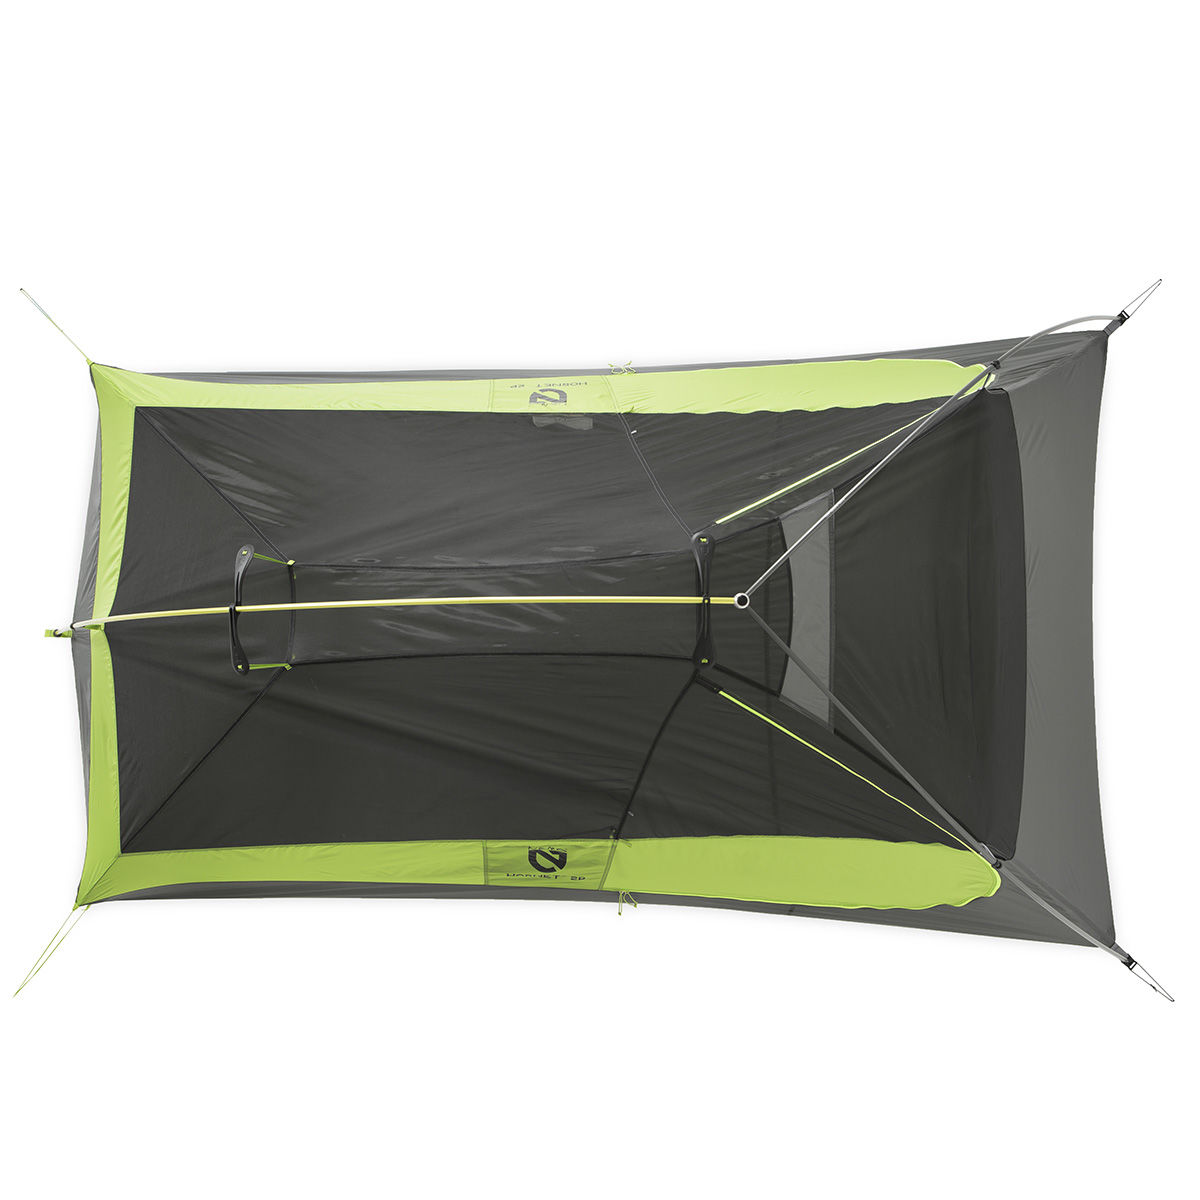 NEMO Hornet 2P backpacking tent